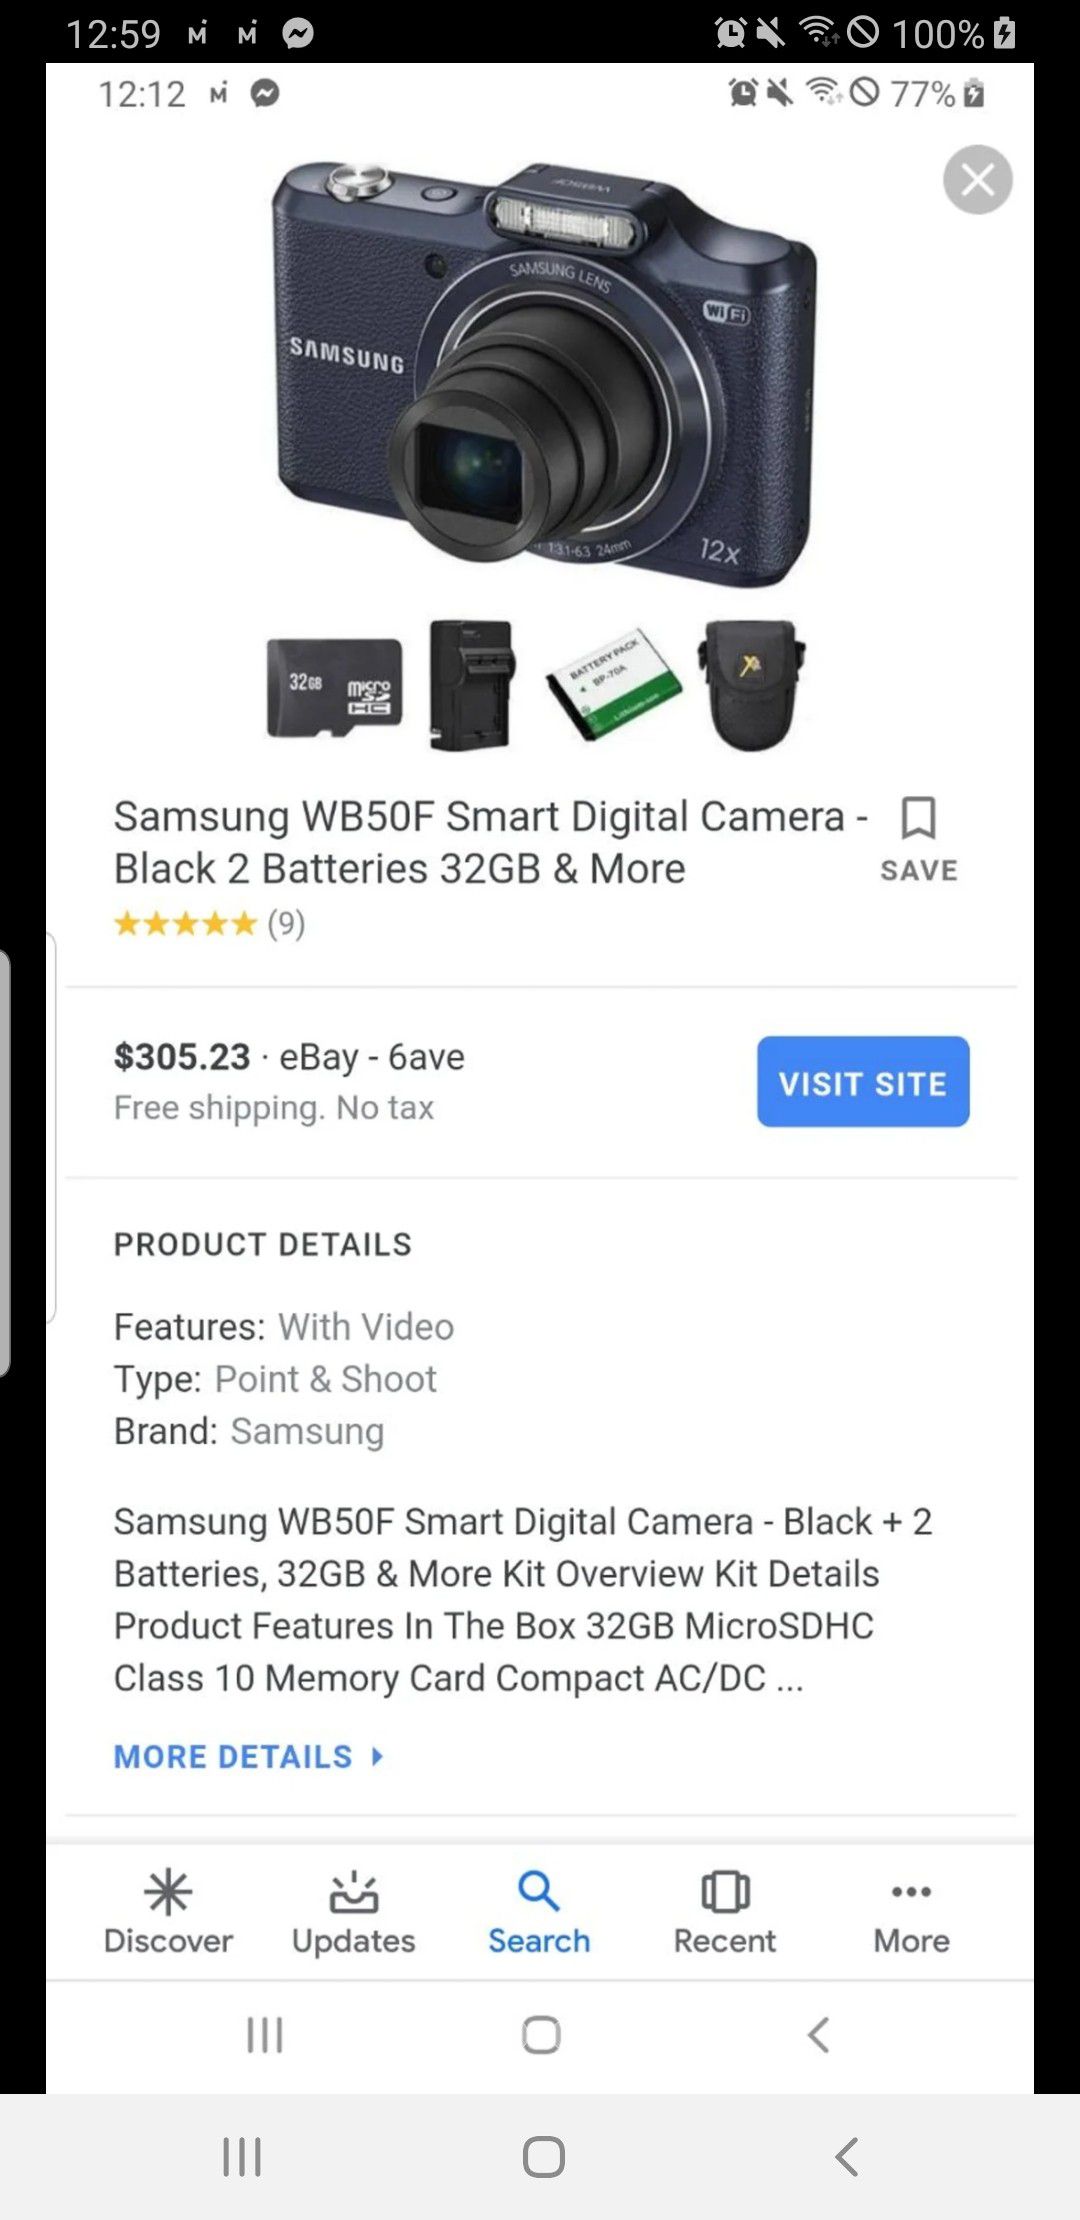 New Samsung digital camera